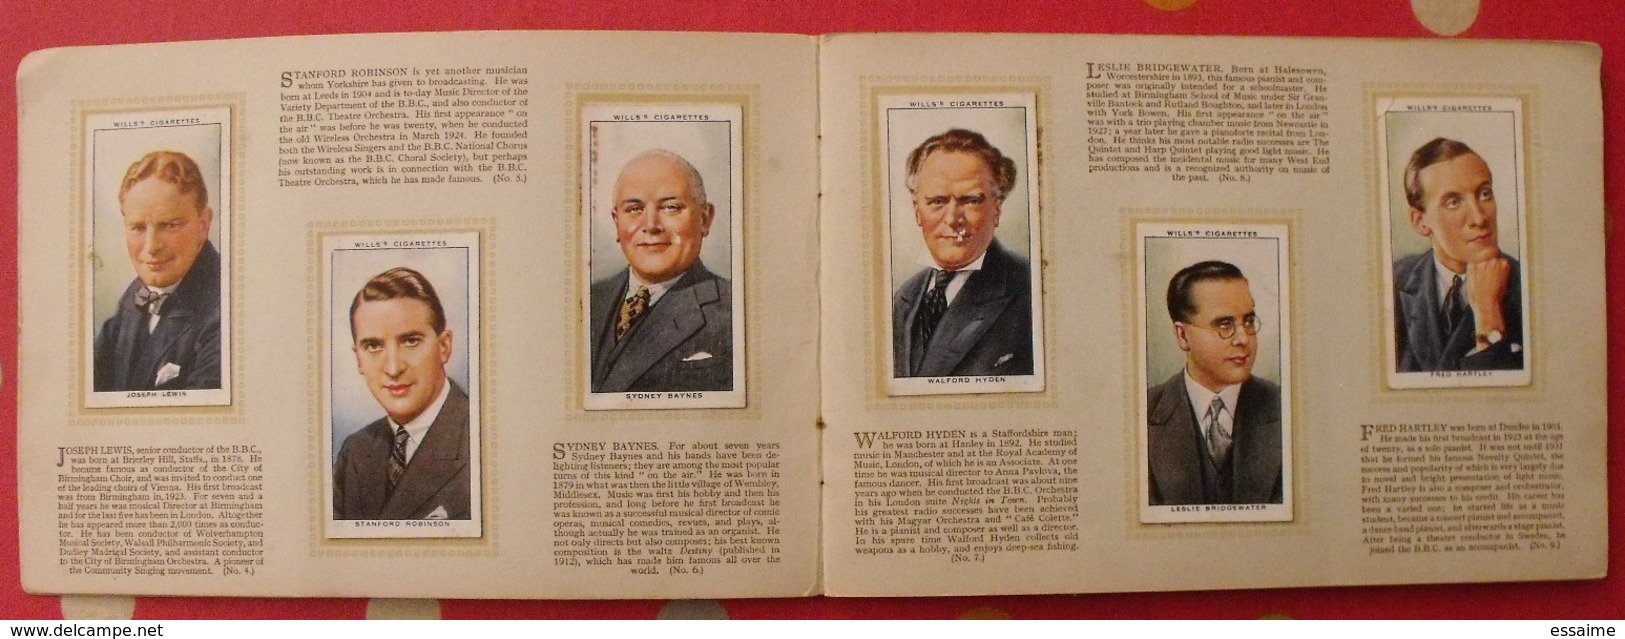 Album D'images Cigarette Pictures Card Wills's. En Anglais. Radio Celebrities Célébrités. 1935. 50 Chromo - Album & Cataloghi